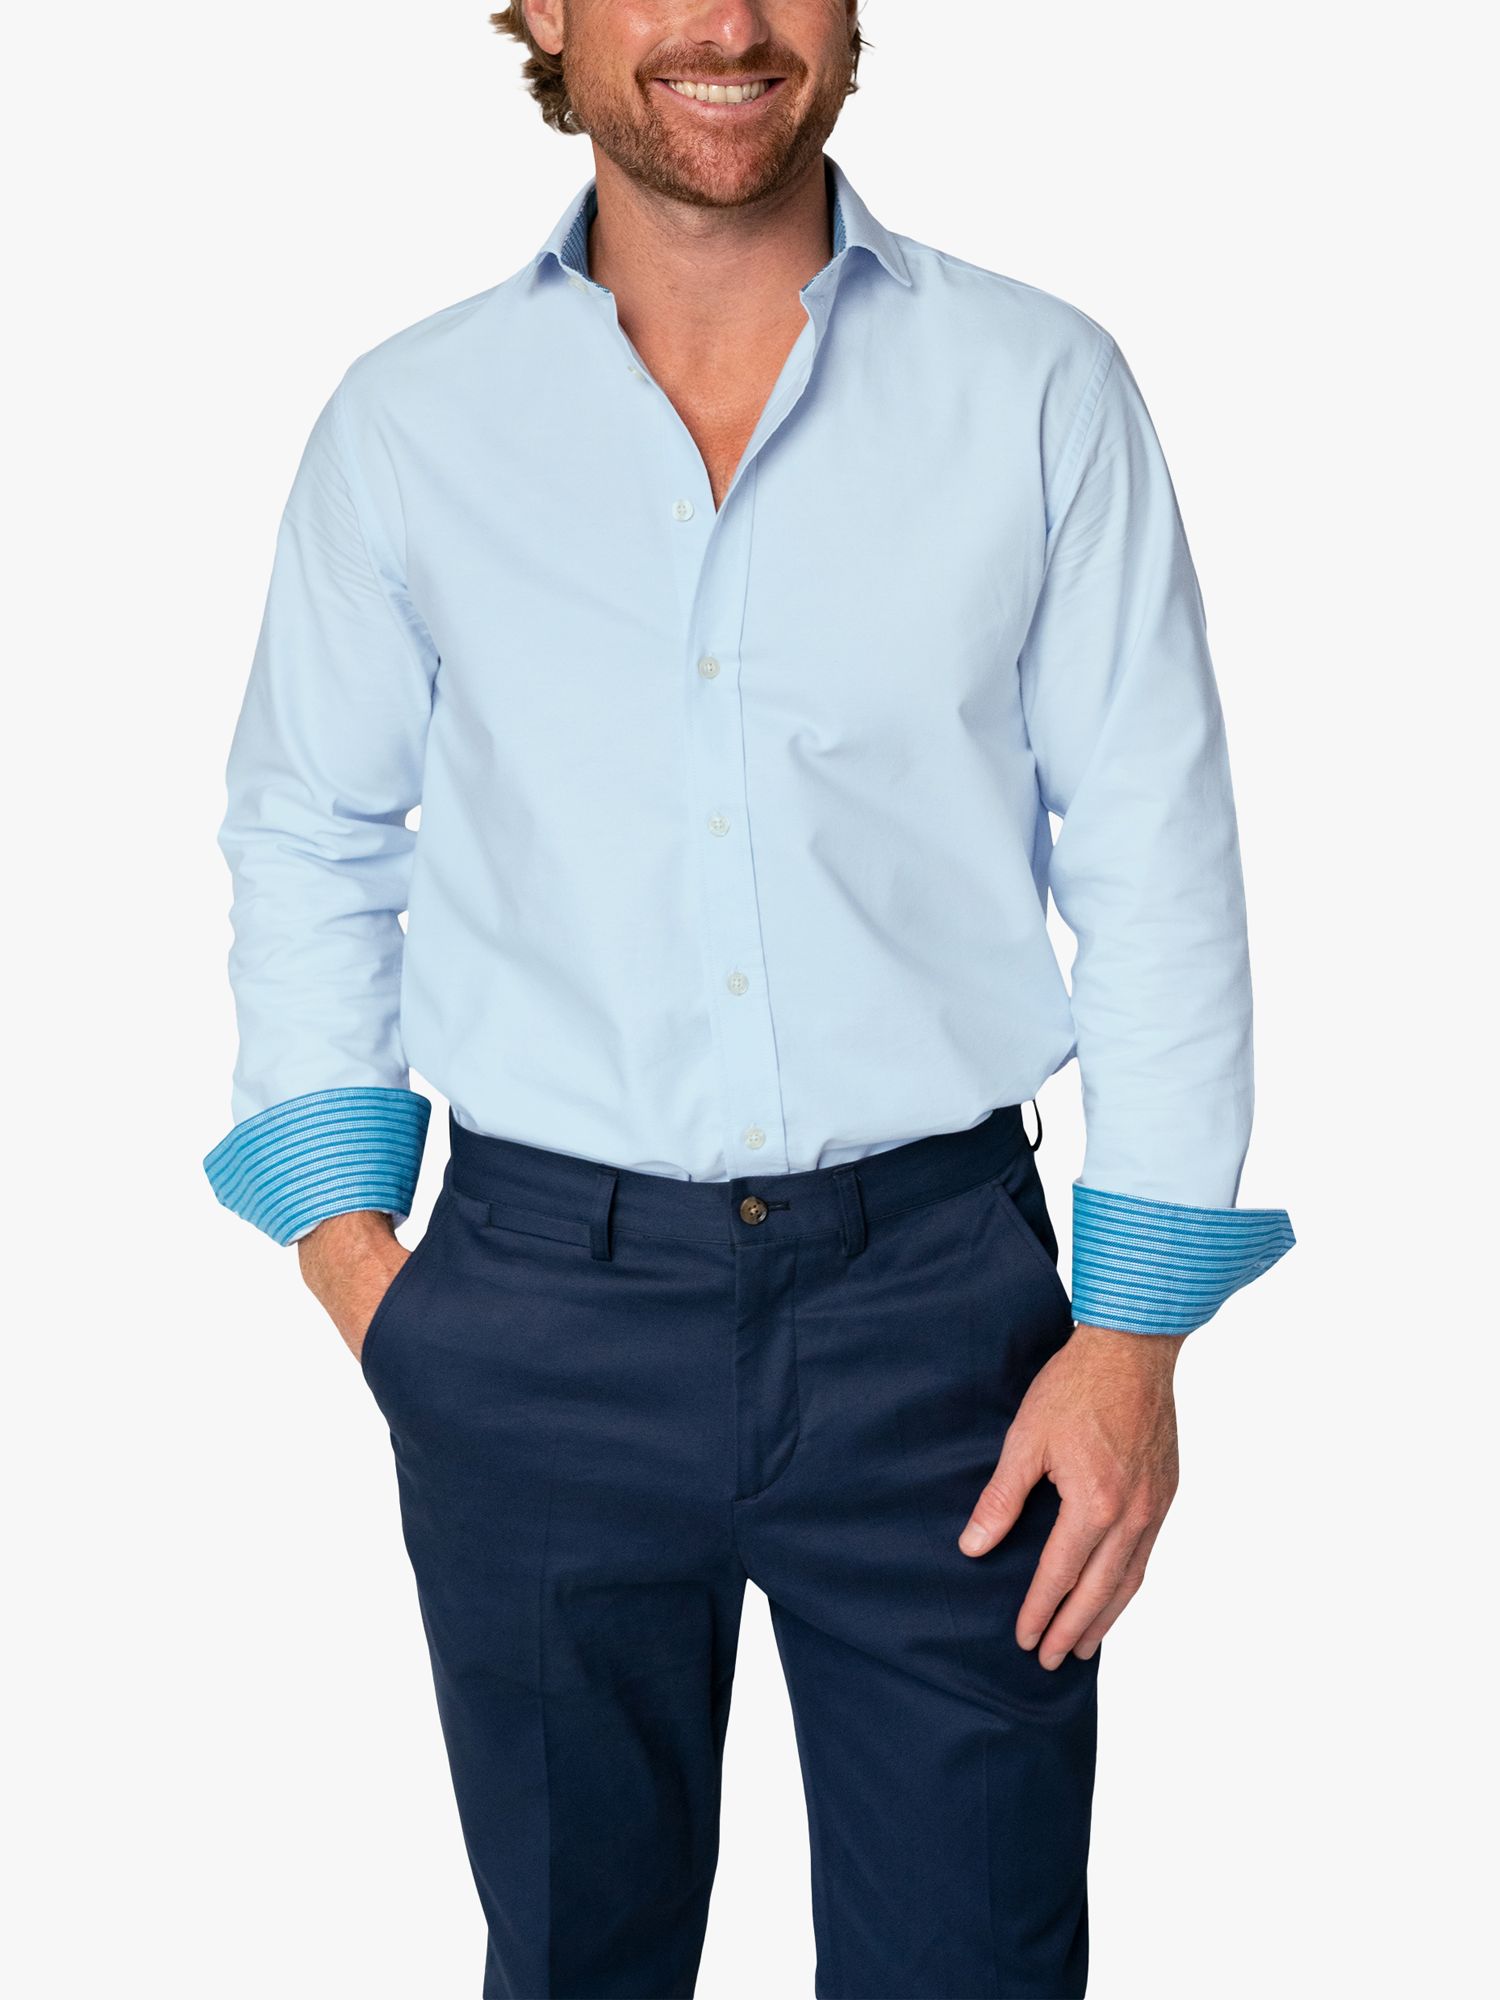 KOY Oxford Cotton Shirt, Blue Light, S